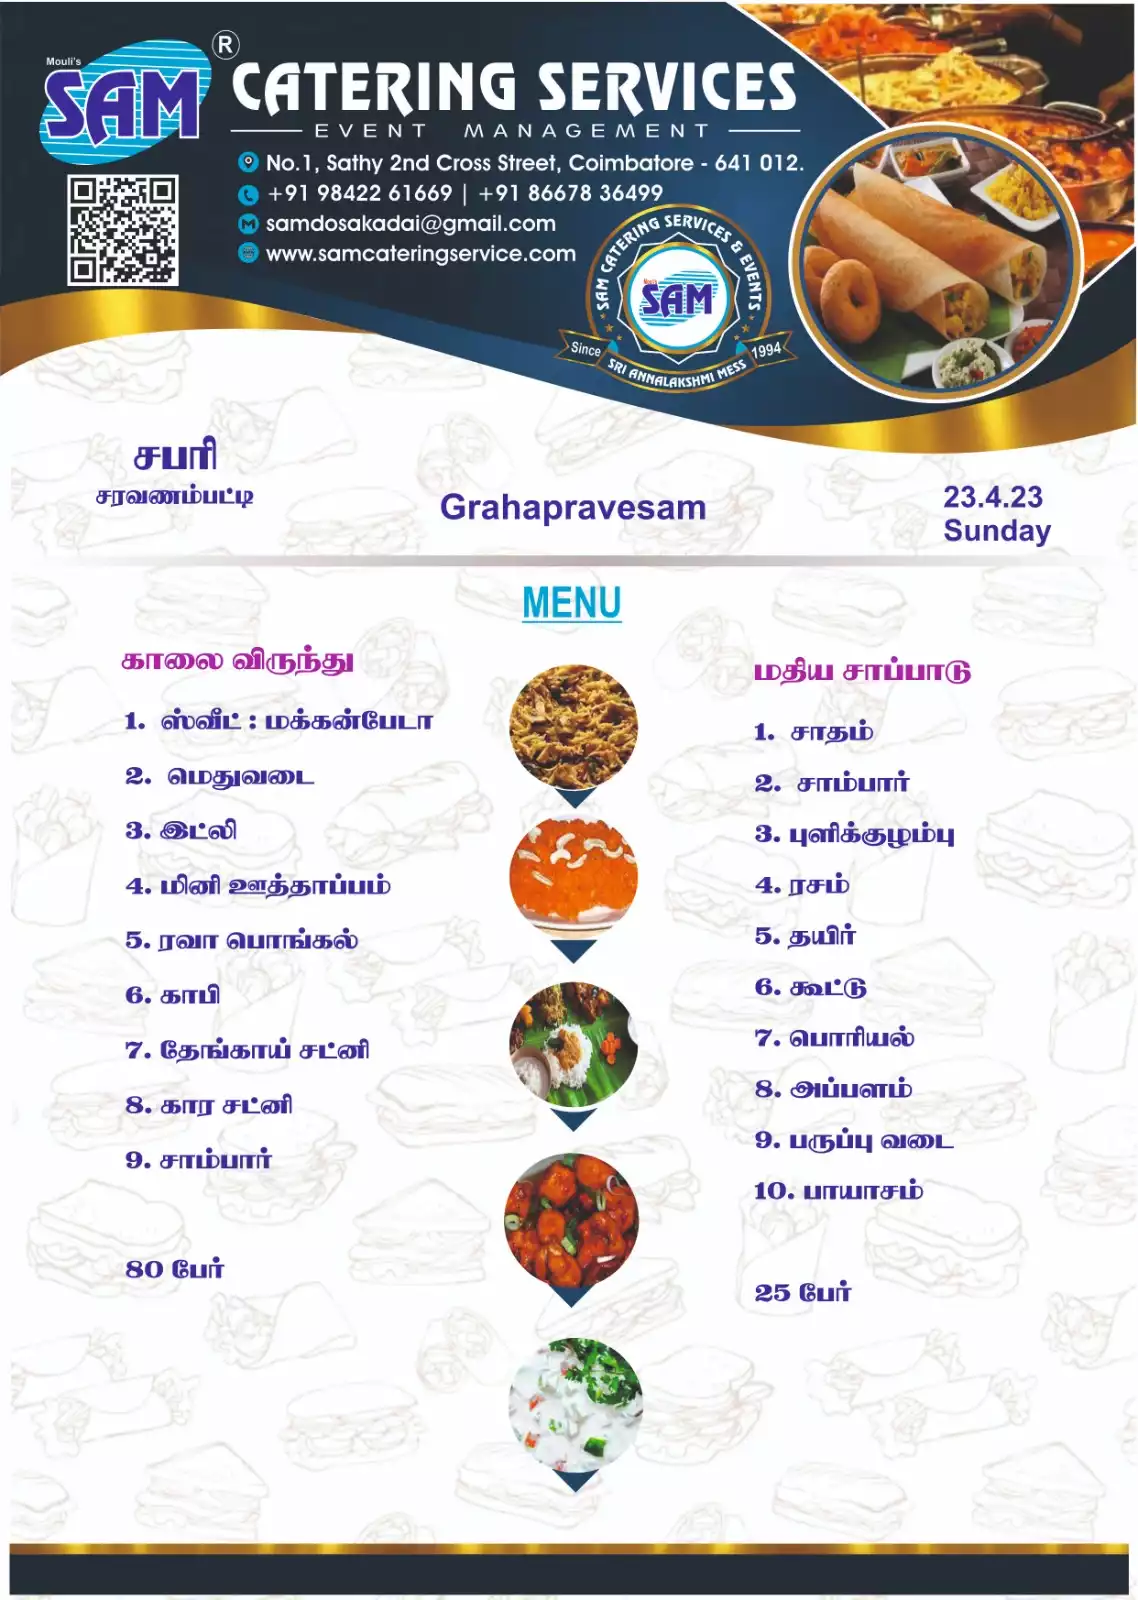 Sample menu